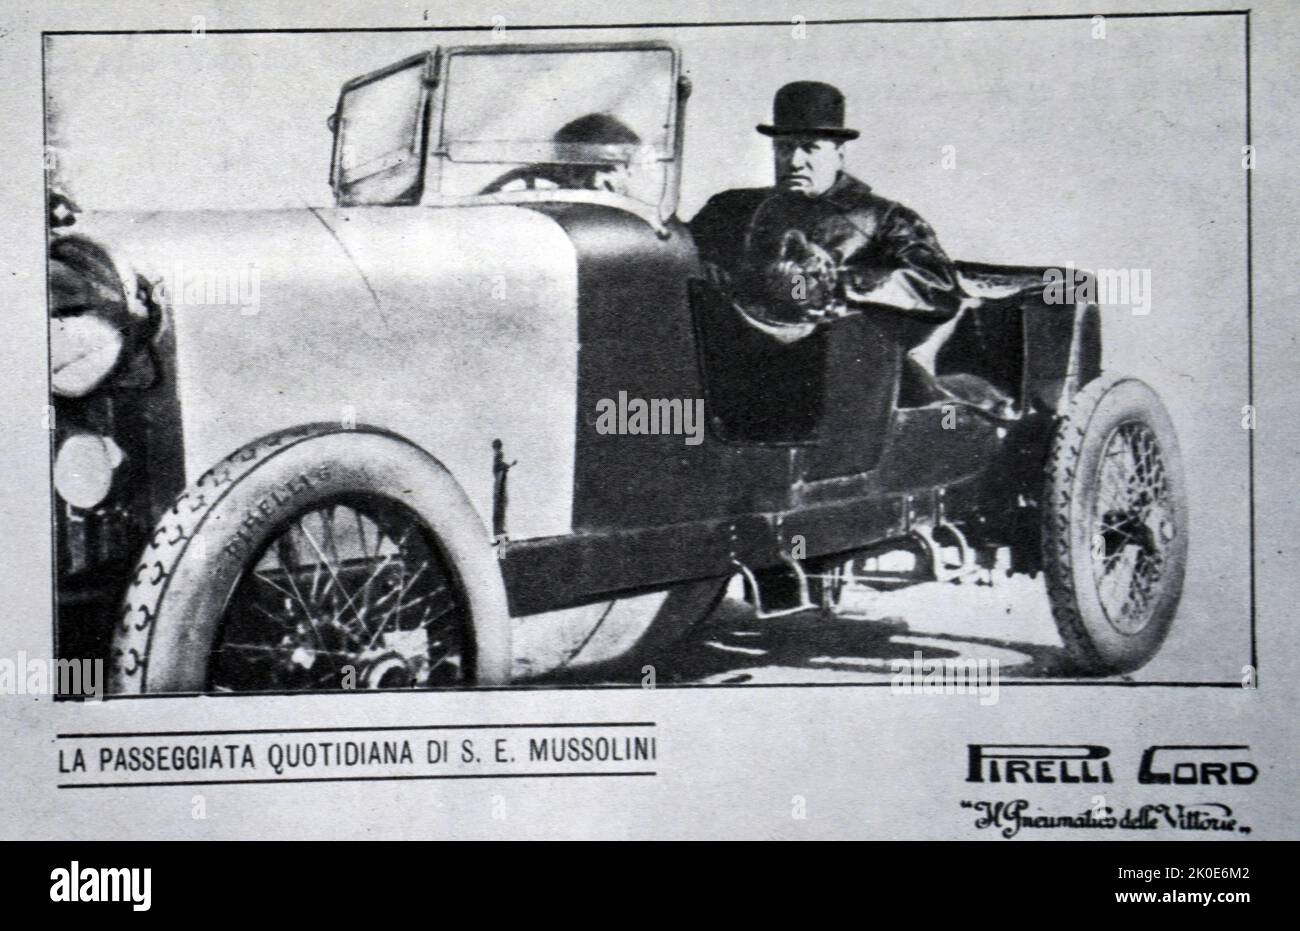 Benito Mussolini (leader fasciste italien) dans une voiture. Publié par l'Agence Italiana Gommc Pirelli de Milan, dans la primavera de 1924. Banque D'Images